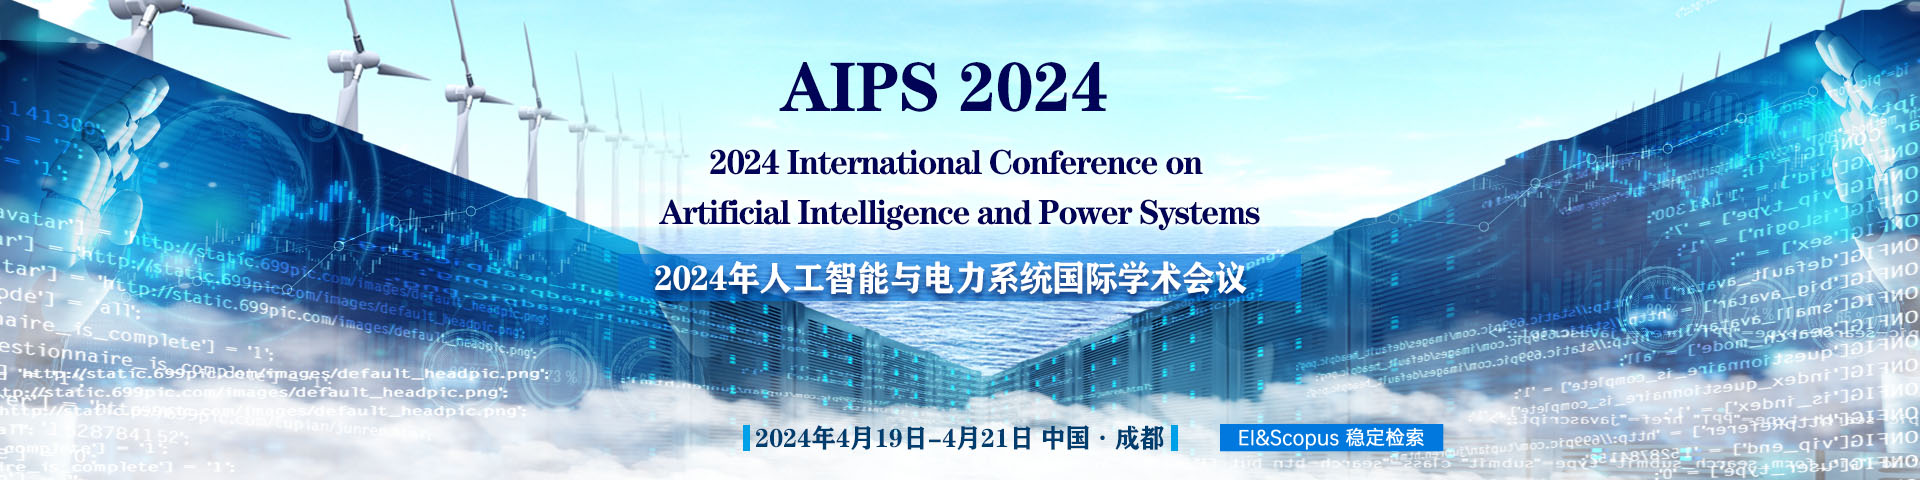 6月武汉站-AIPS 2023-上线平台1920x480.jpg